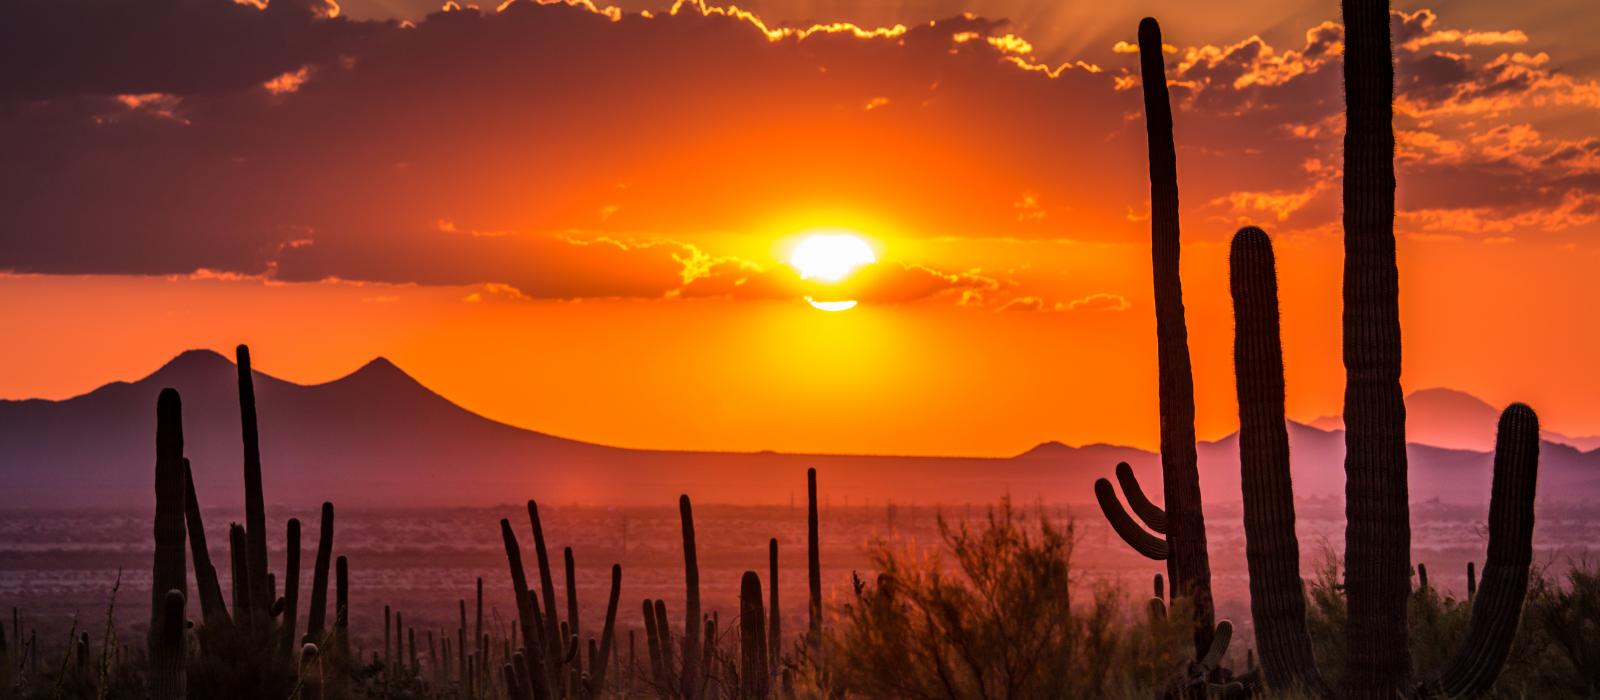 Tucson, Arizona sunset